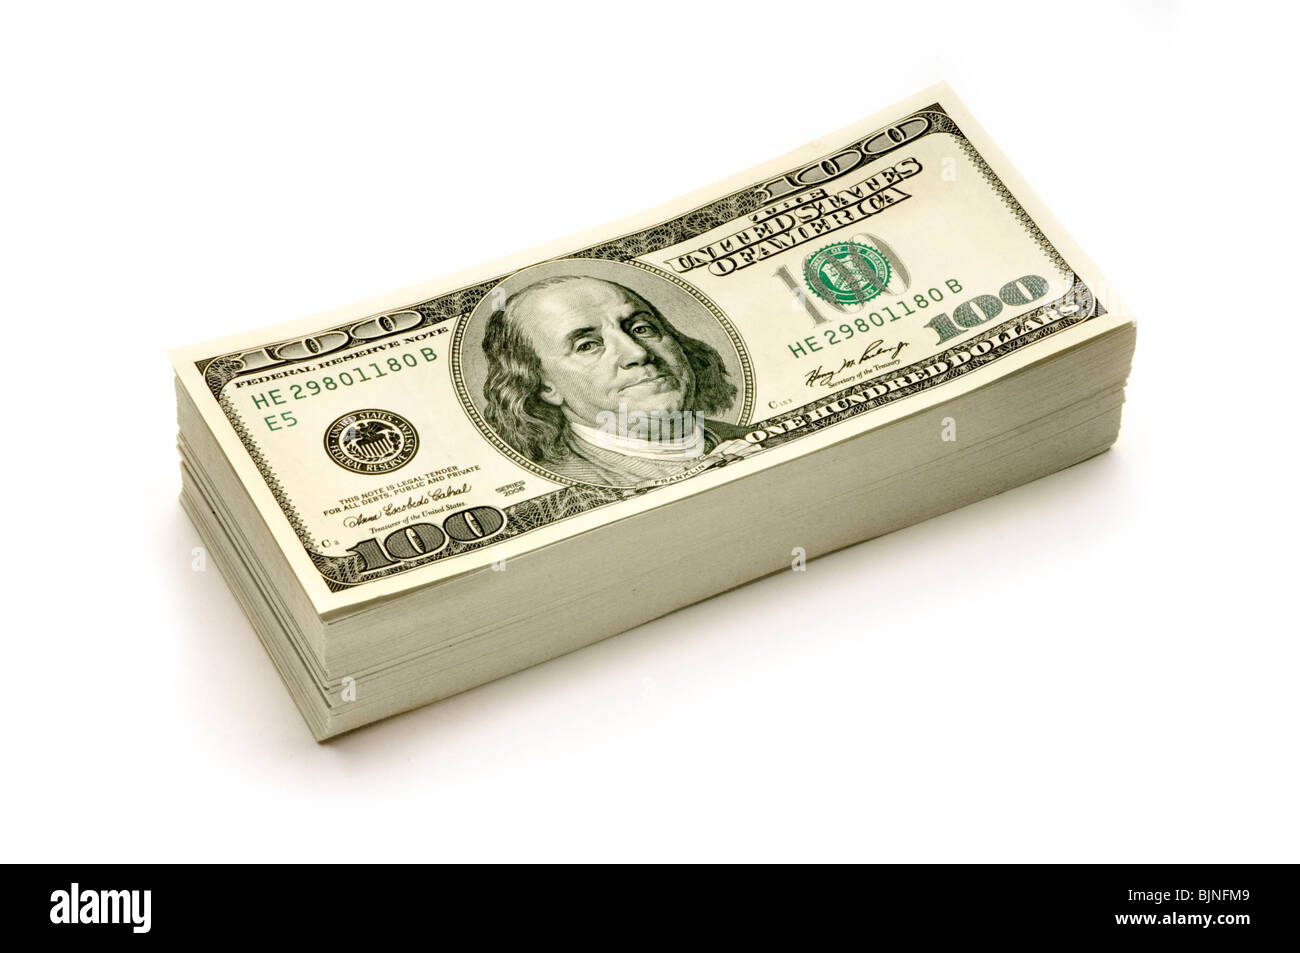 Stapel von amerikanischen Geld auf weißem Hintergrund Stockfoto